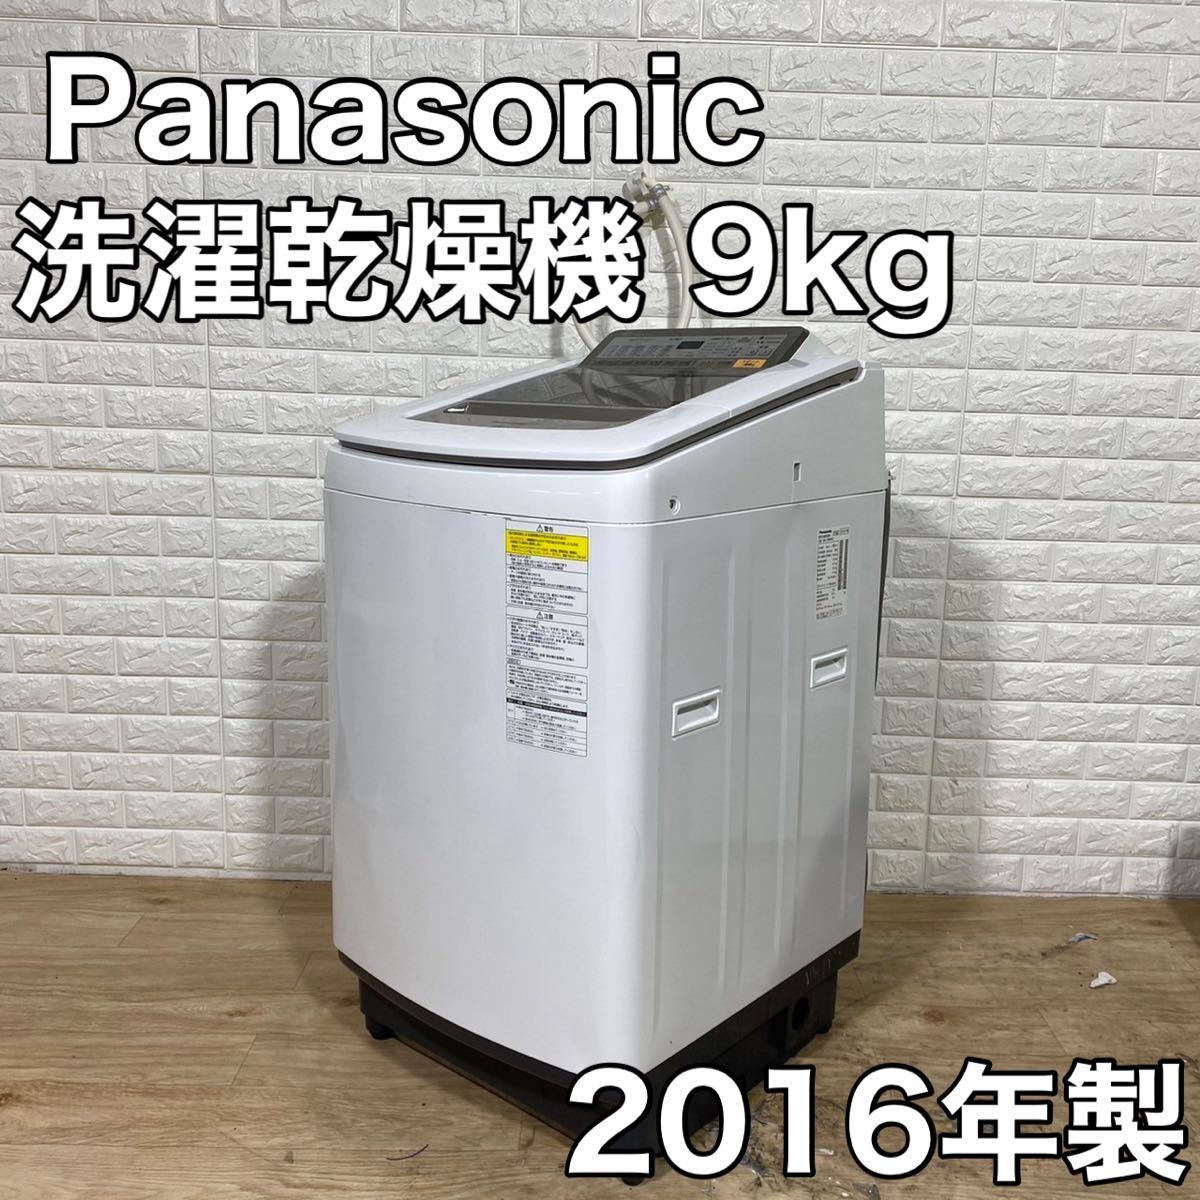 高い品質 Panasonic パナソニック NA-FW90S2 家電 洗濯乾燥機 洗濯機 5kg以上